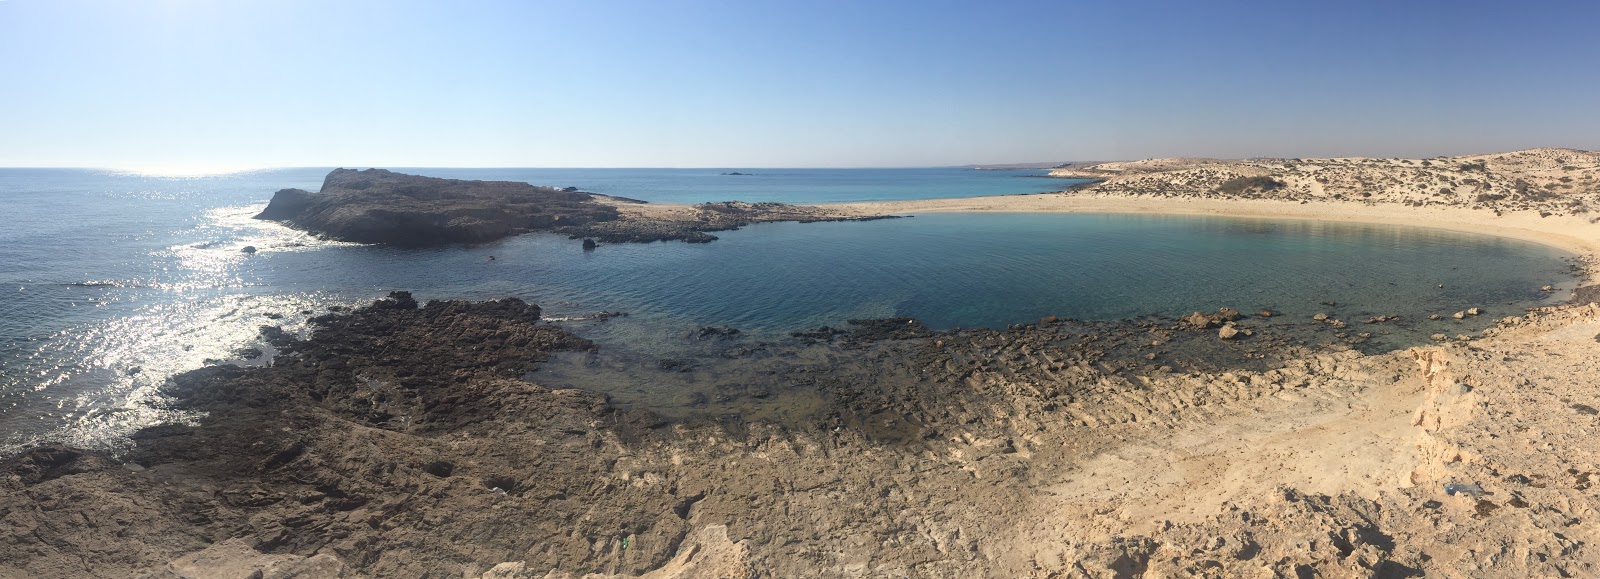 Ras El Hikma Beach'in fotoğrafı geniş ile birlikte